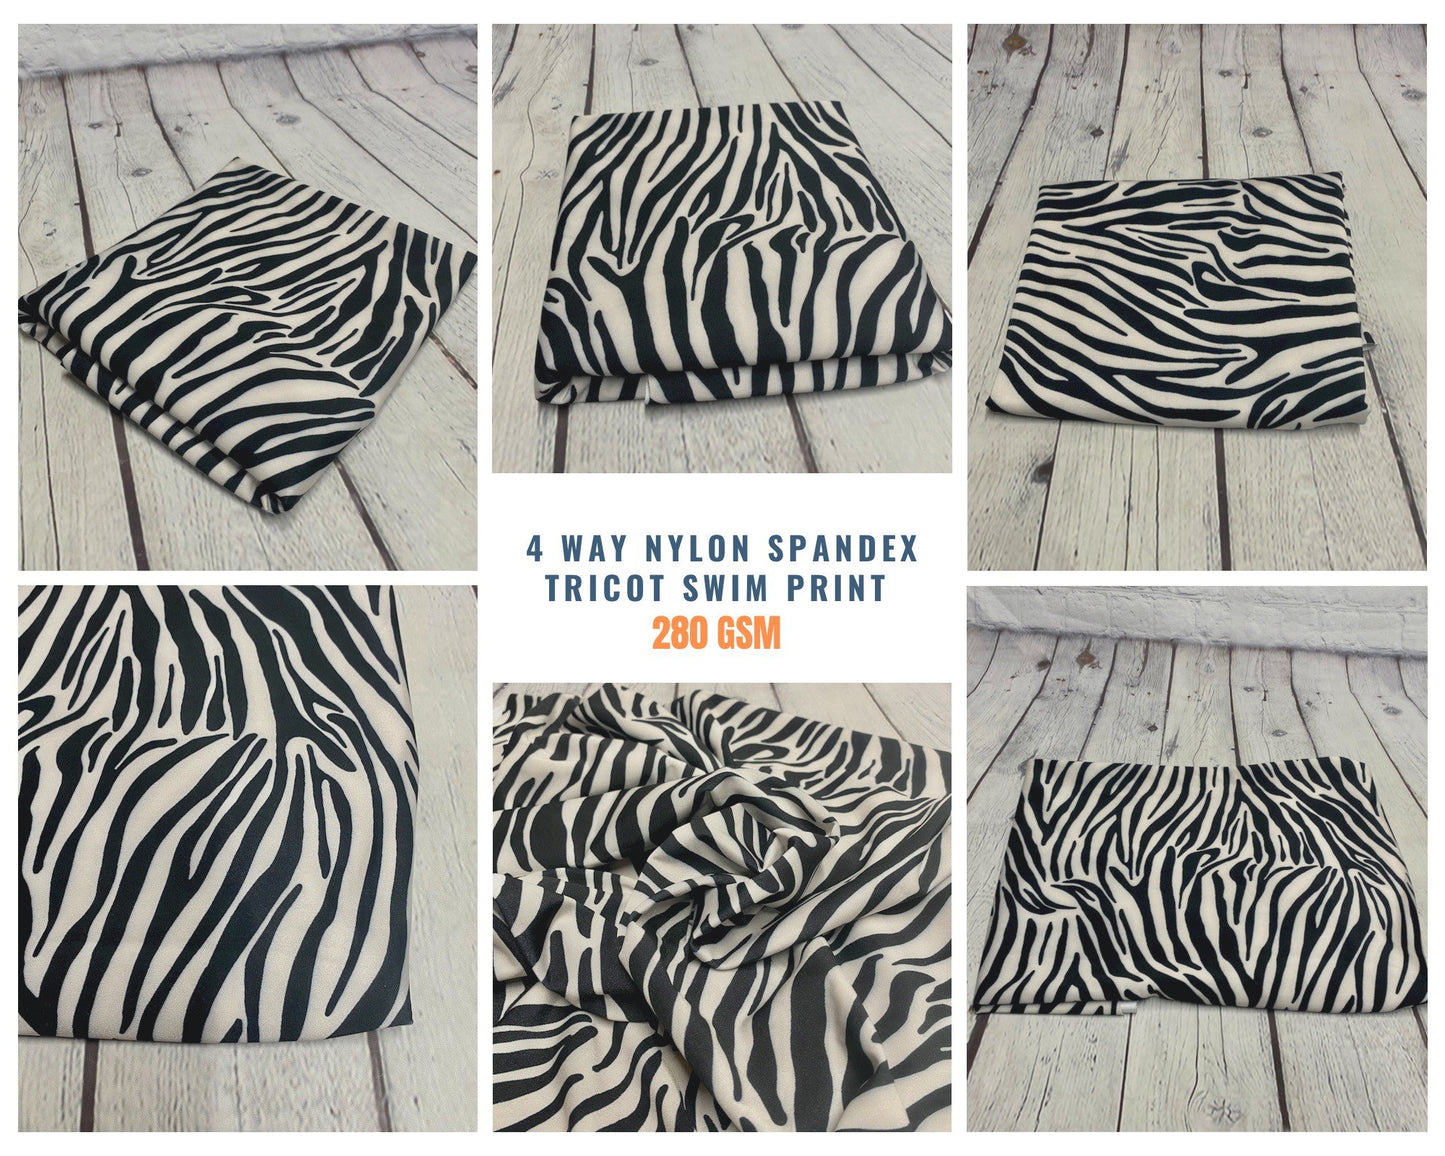 4 Way Stretch Print Nylon Spandex Fabric By The Yard Tricot Swim Wear Bikini Active Wear Black White  Zebra Animal  Print 280 GSM